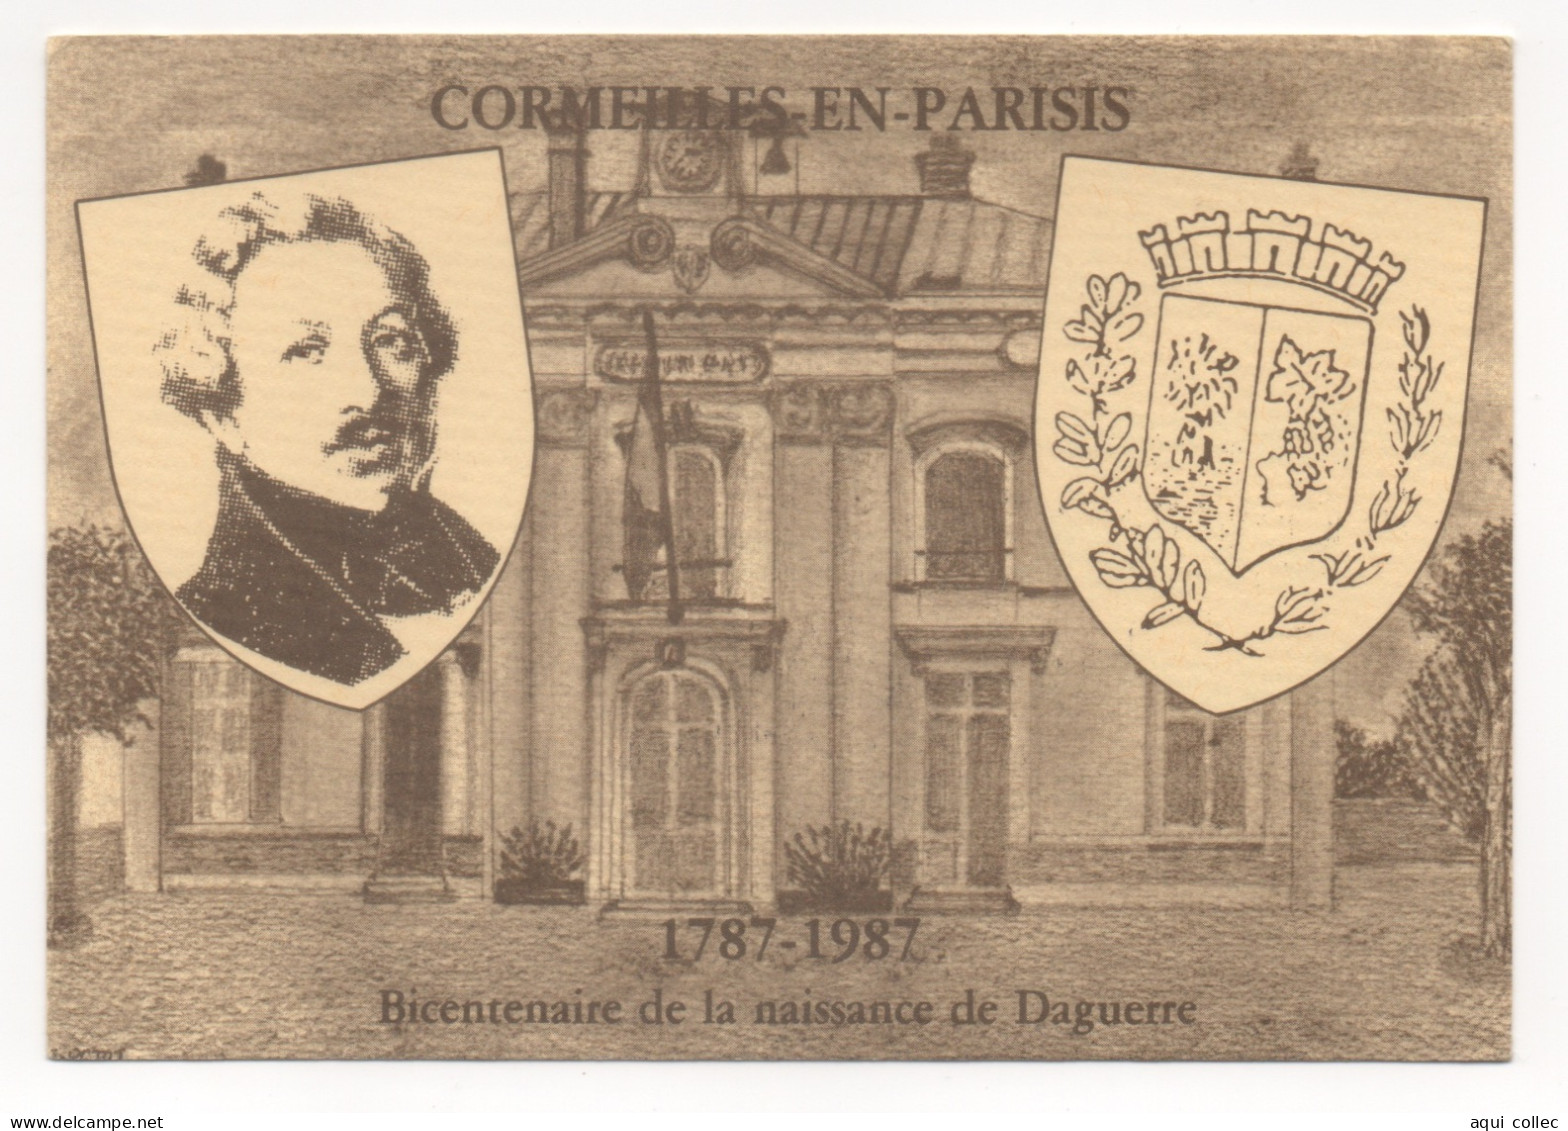 CORMEILLES-EN-PARISIS  95 BI-CENTENAIRE DE LA NAISSANCE DE L.J.M. DAGUERRE 1787 - 1987 - Cormeilles En Parisis